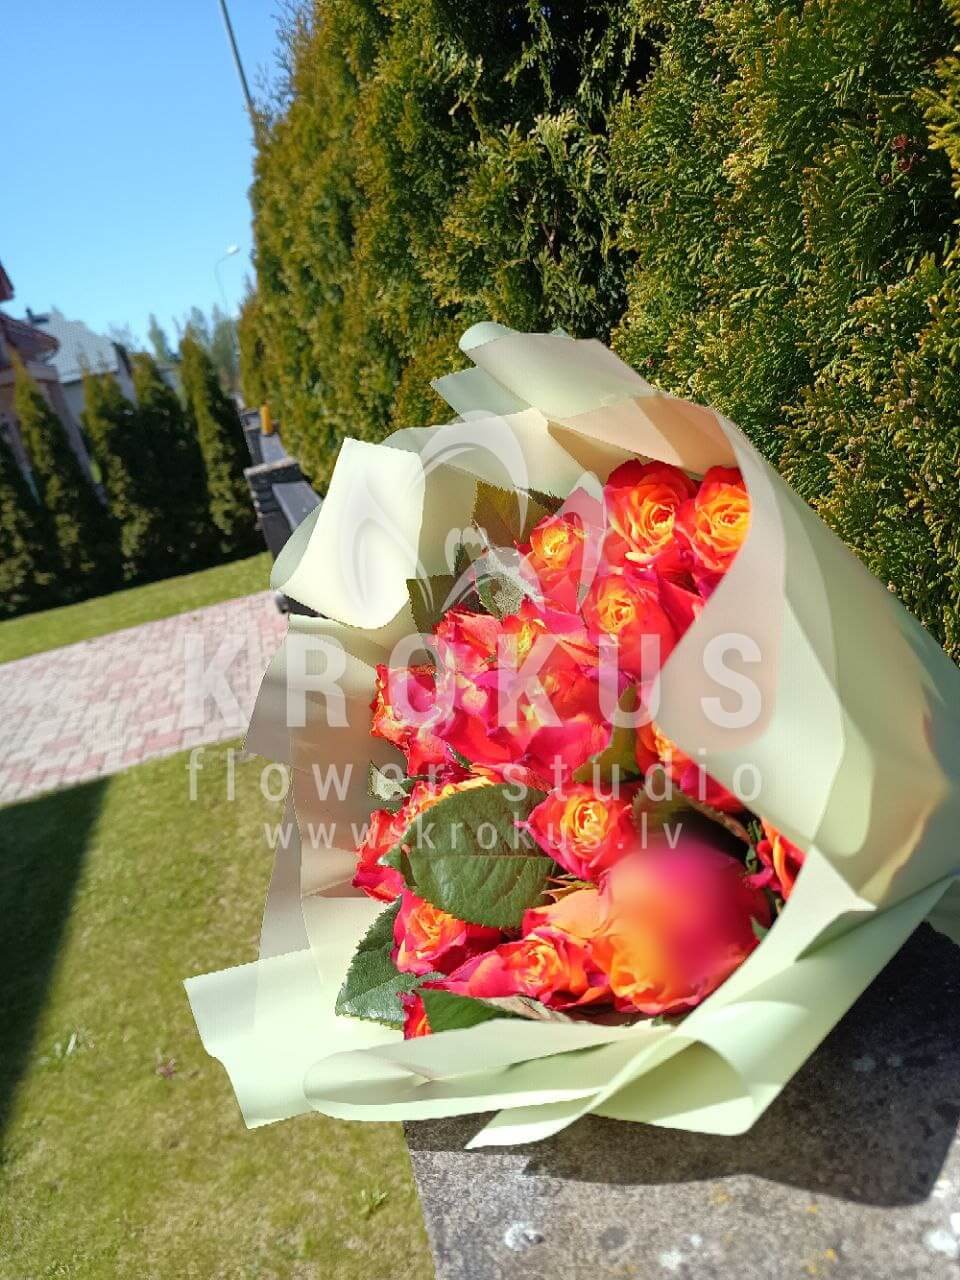 Deliver flowers to Spilve (bicolor roses)